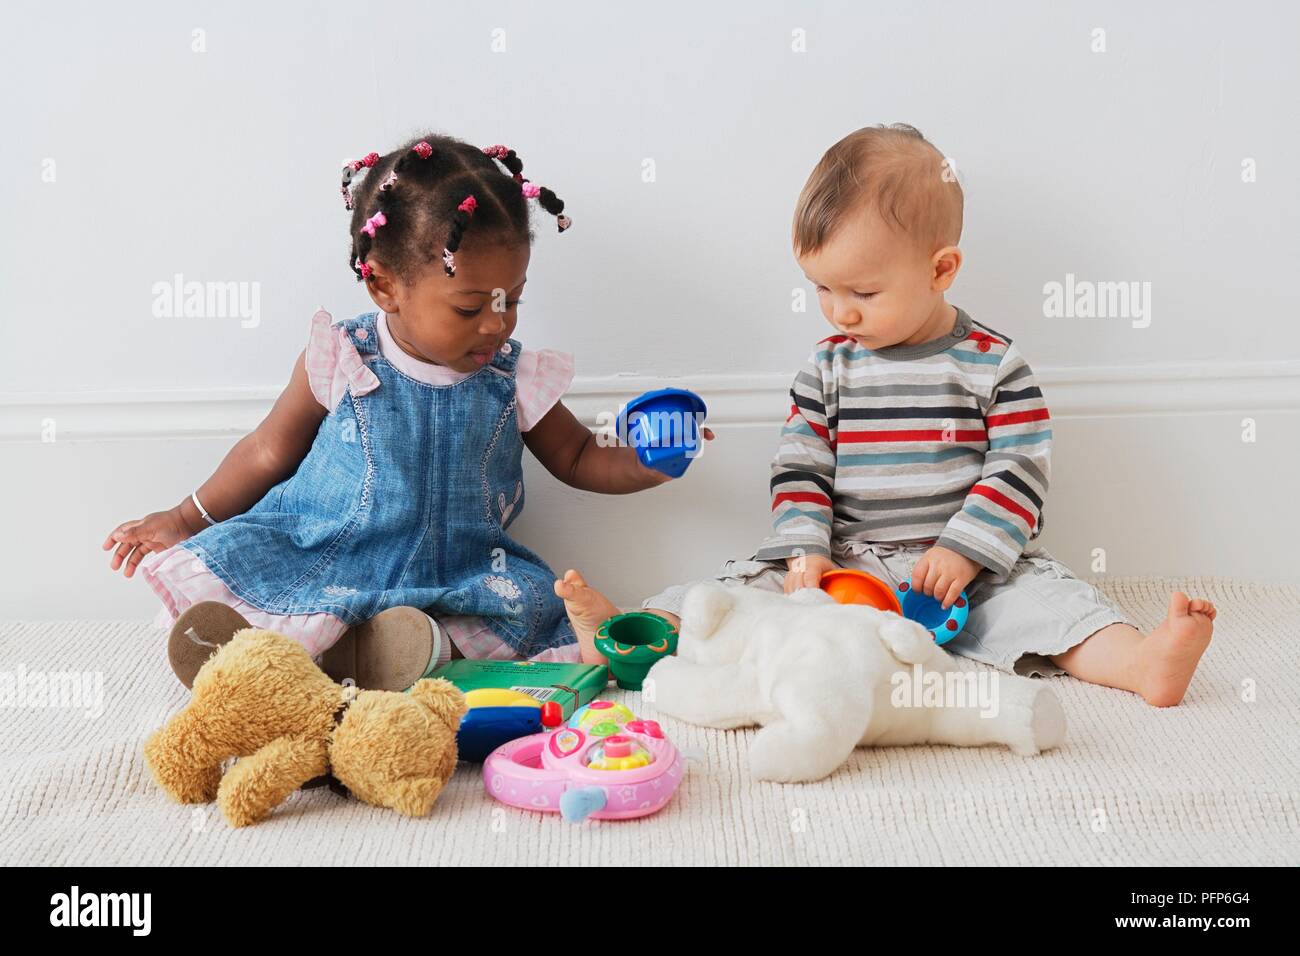 13 Monate altes Baby Mädchen und 10 Monate altem Baby Junge sitzt auf dem  Boden mit Spielzeug spielen Stockfotografie - Alamy